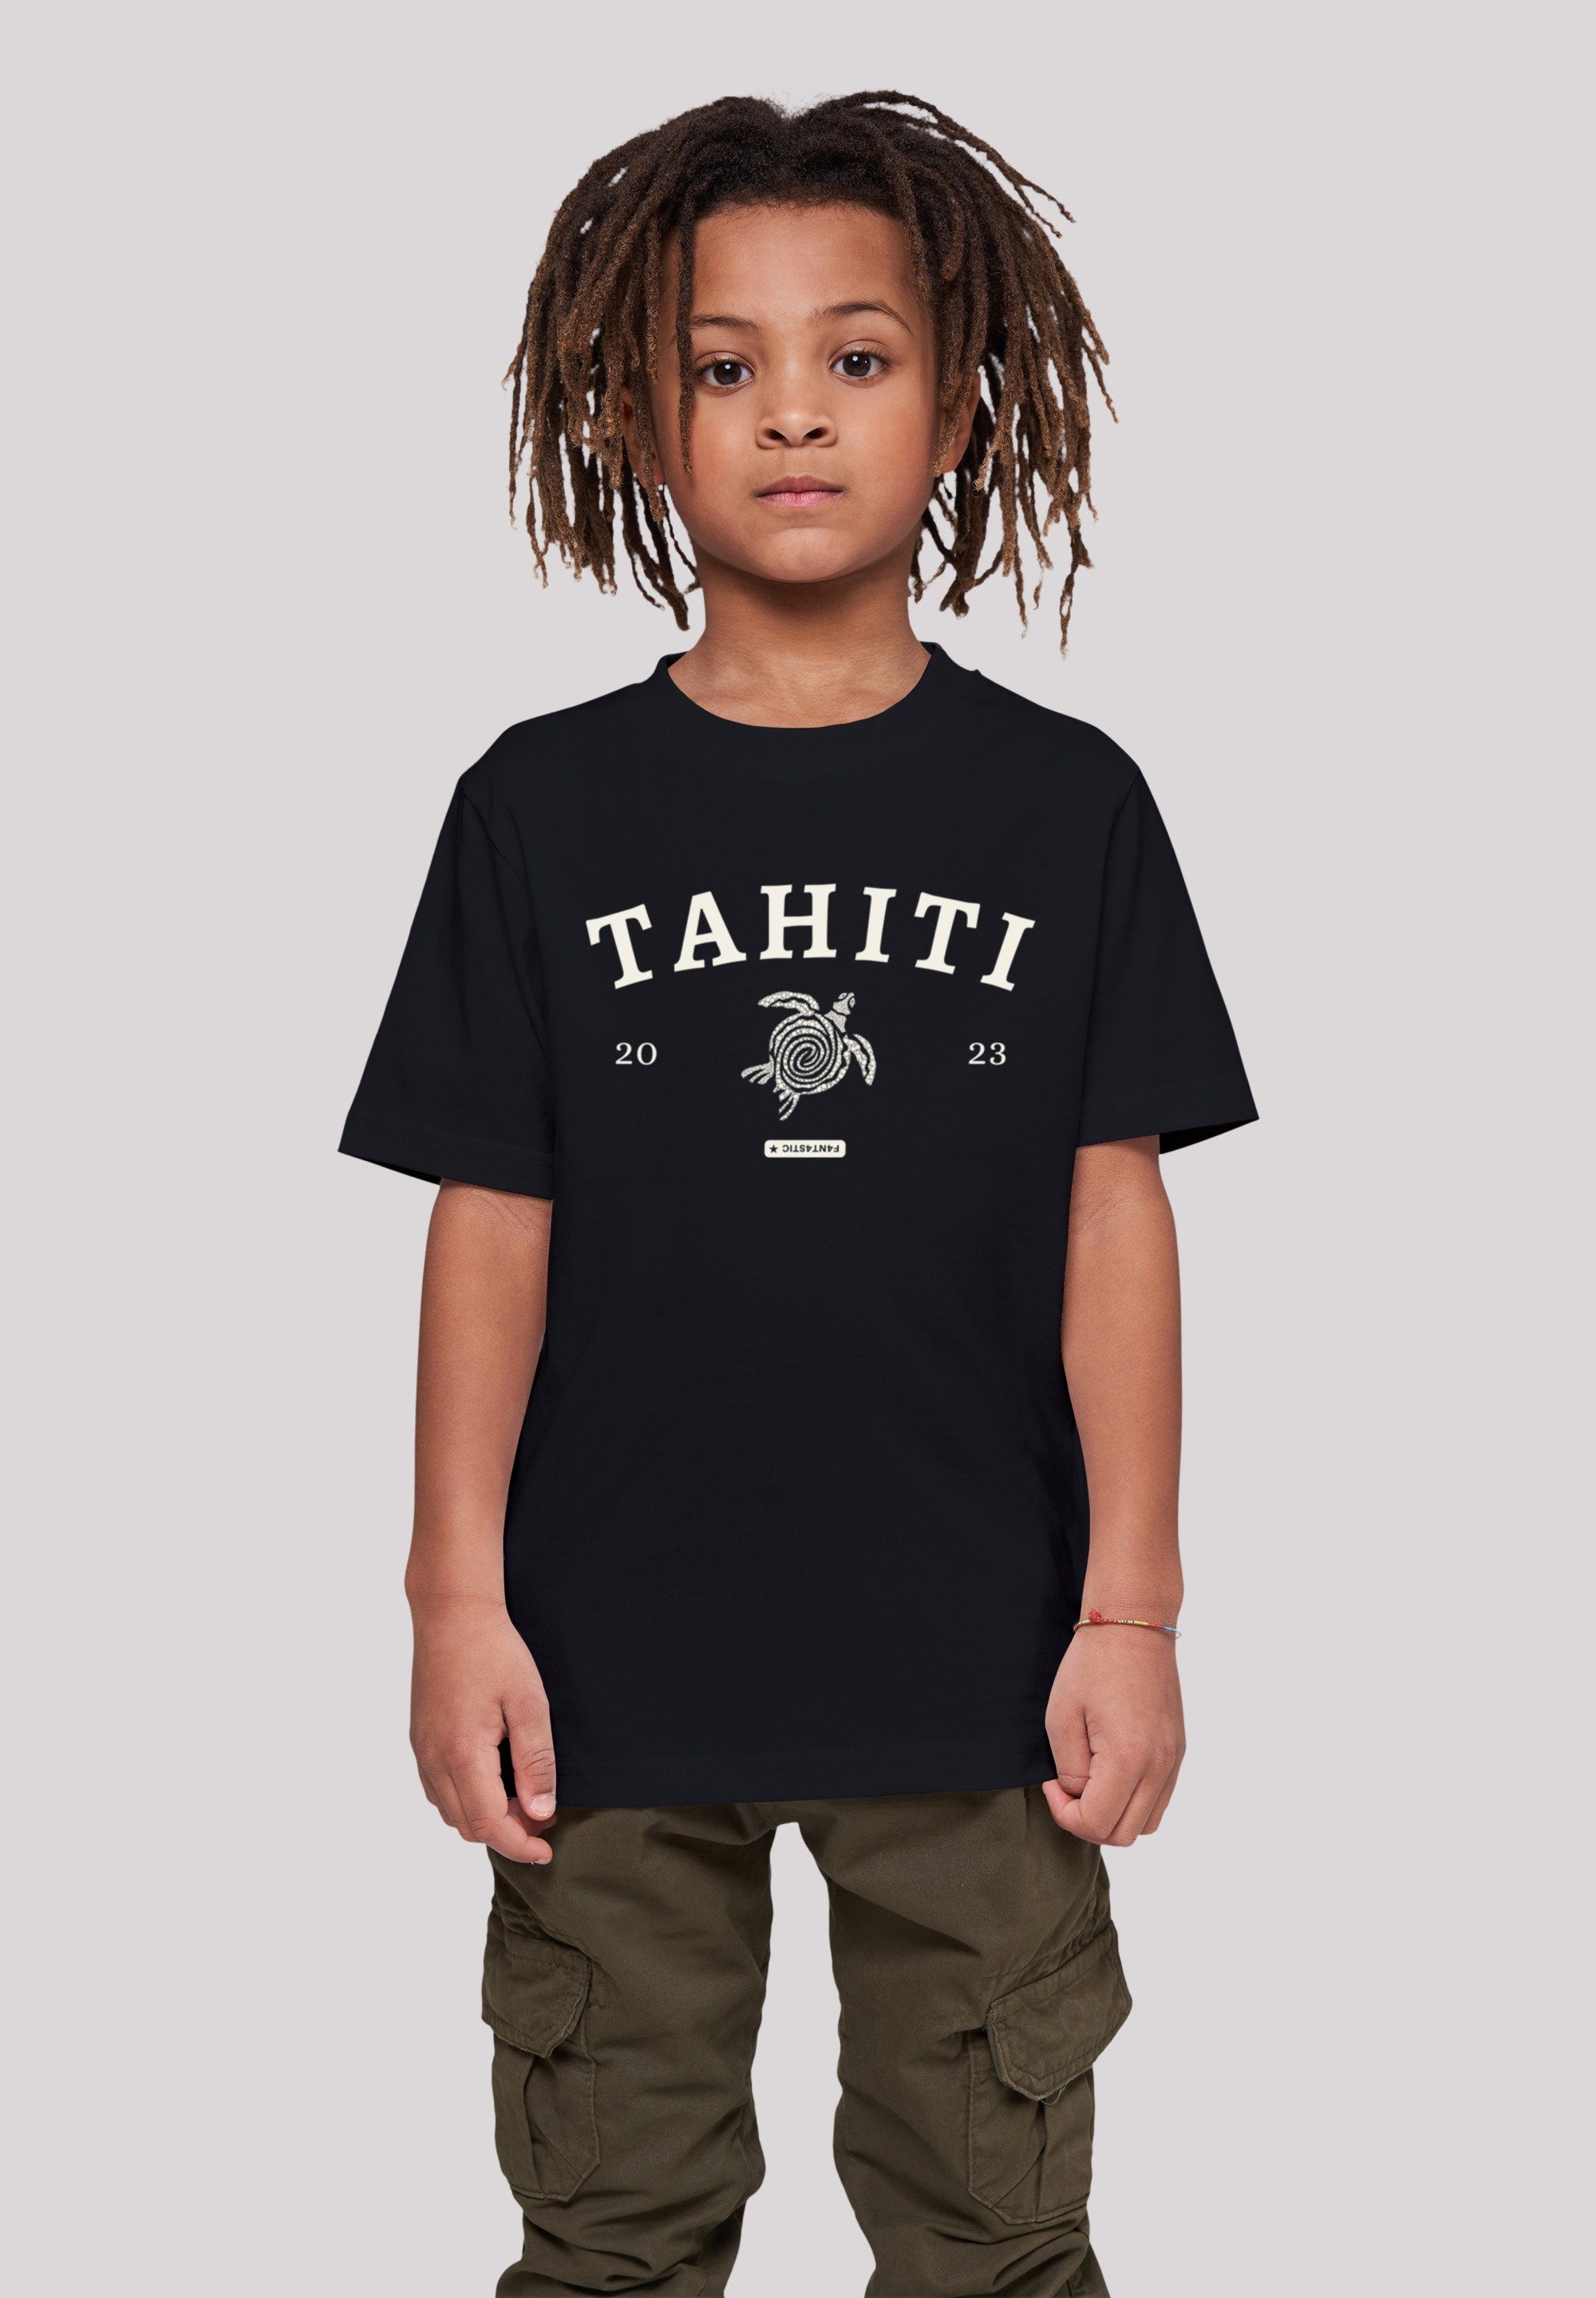 Für den Versandhandel im Ausland F4NT4STIC T-Shirt weicher mit Tahiti Baumwollstoff hohem Tragekomfort Print, Sehr